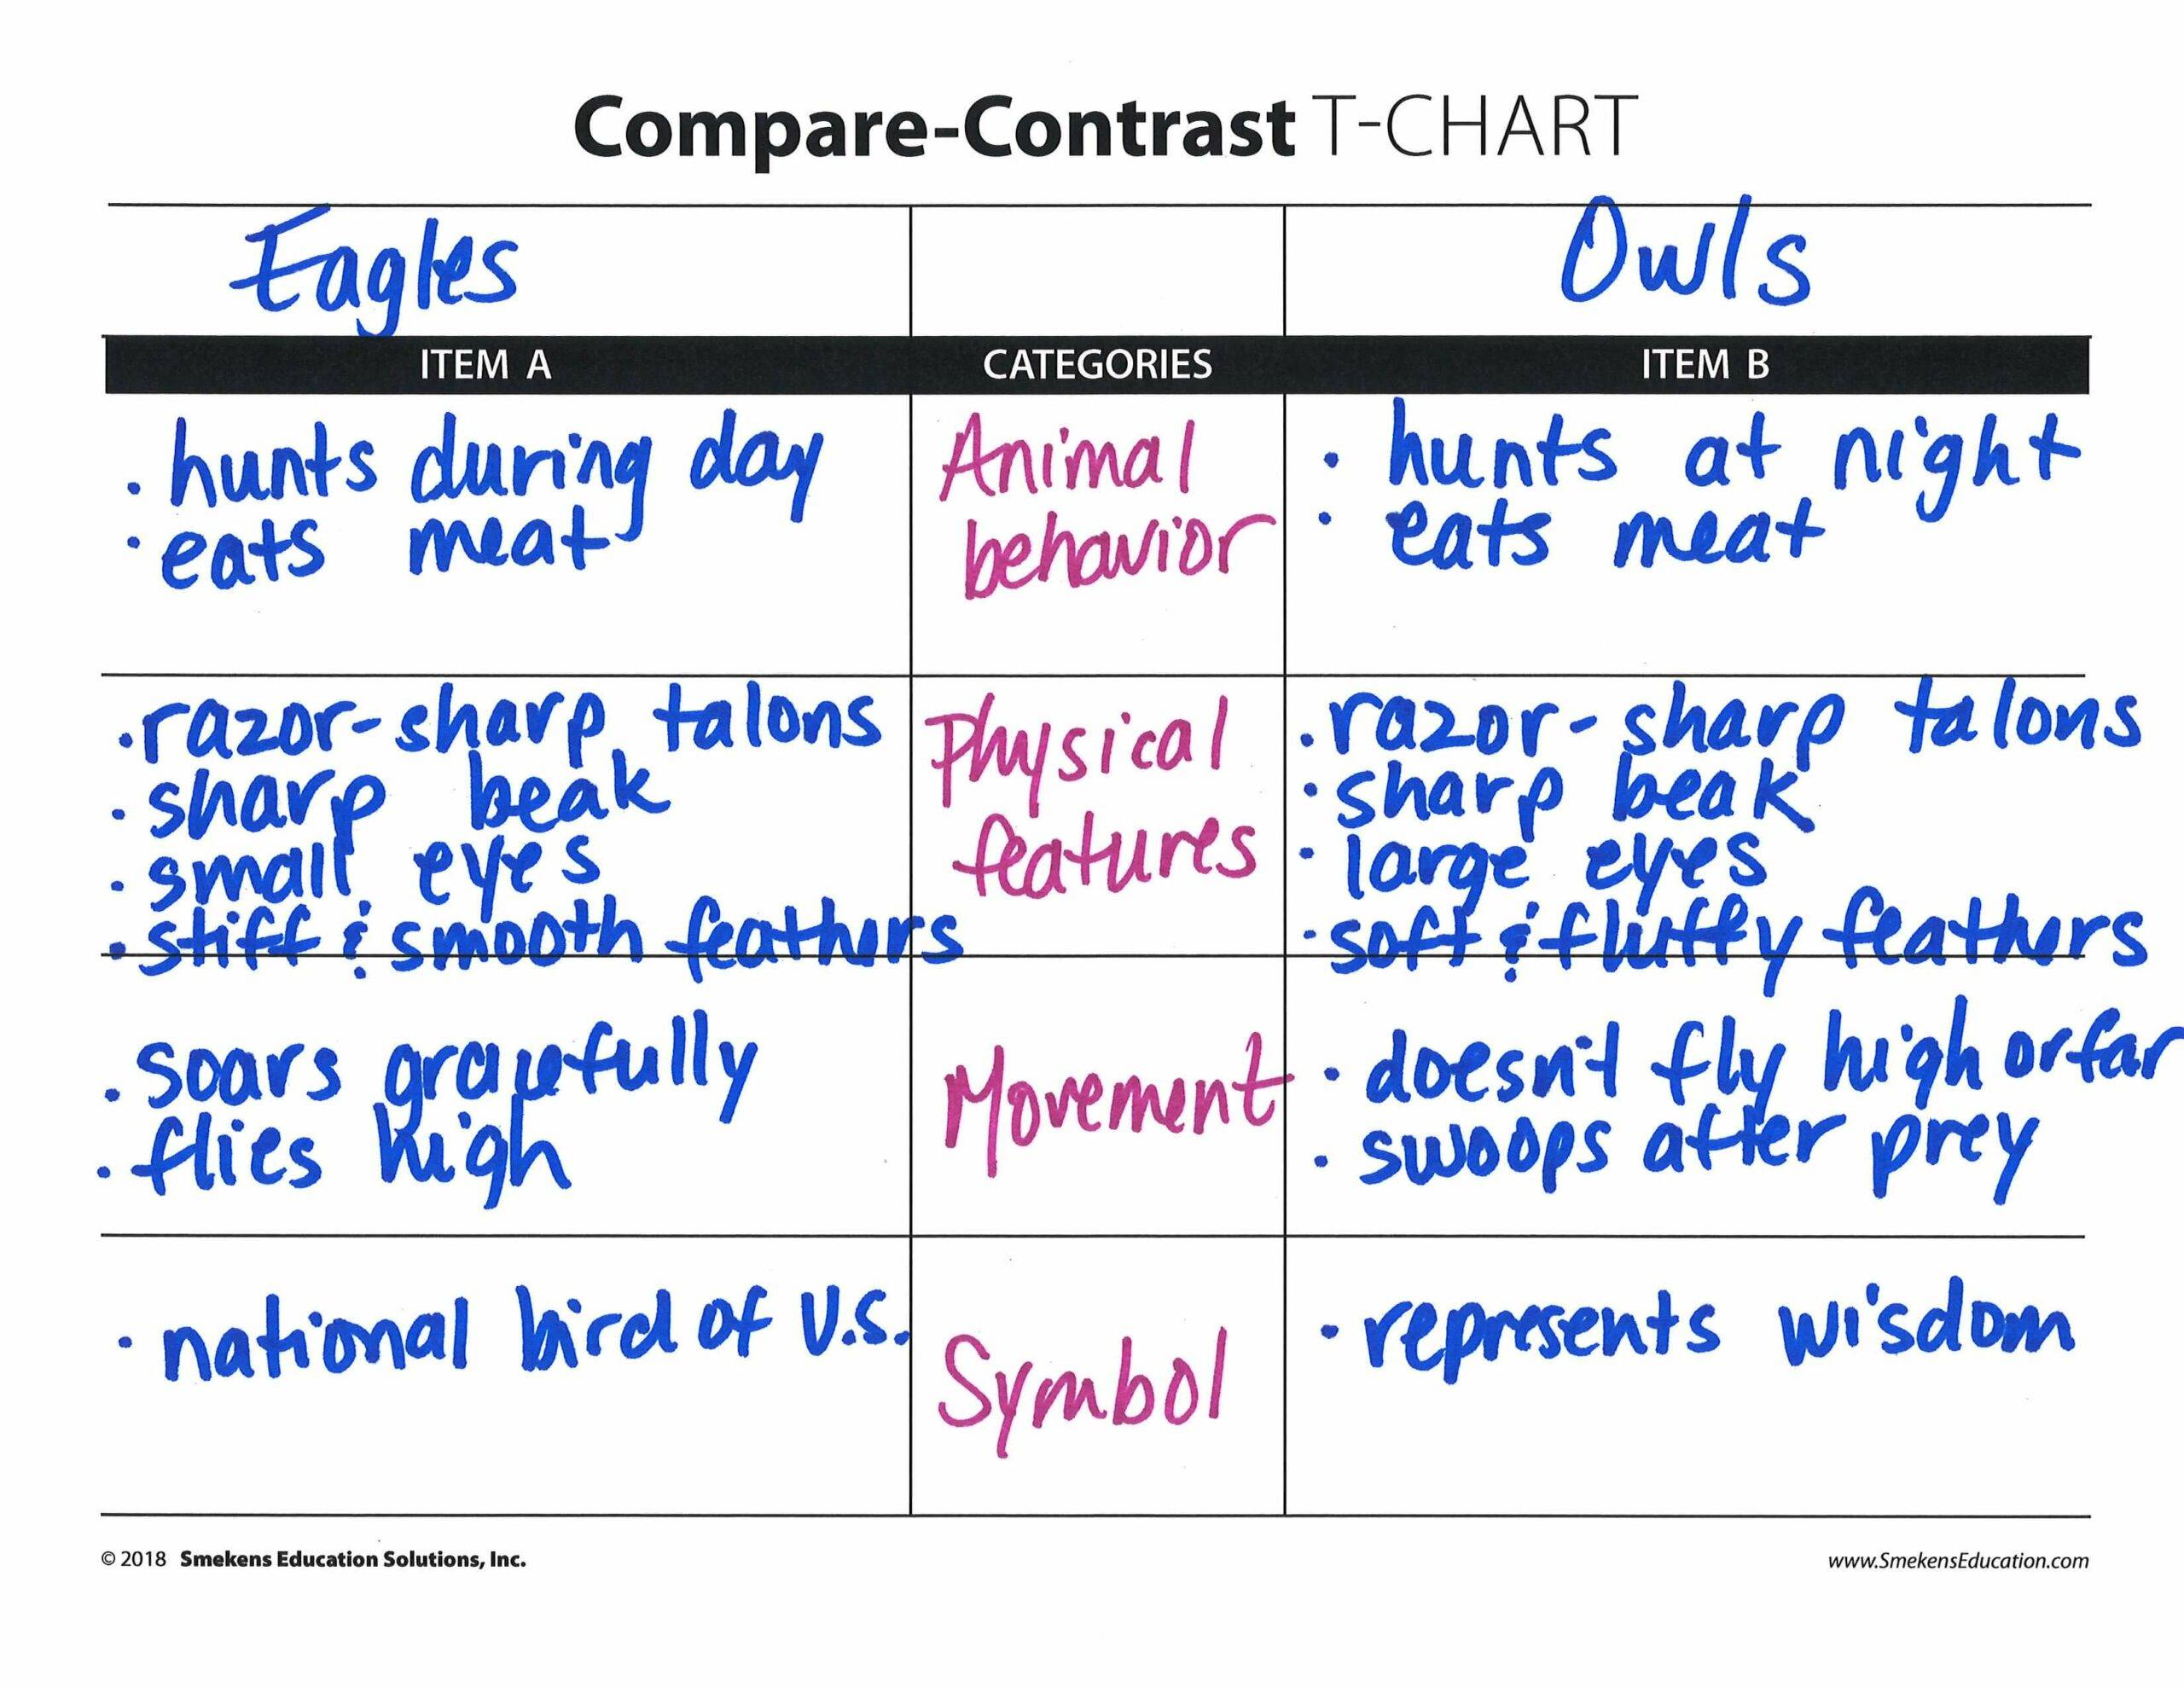 Eagles vs Owls T-Chart Example